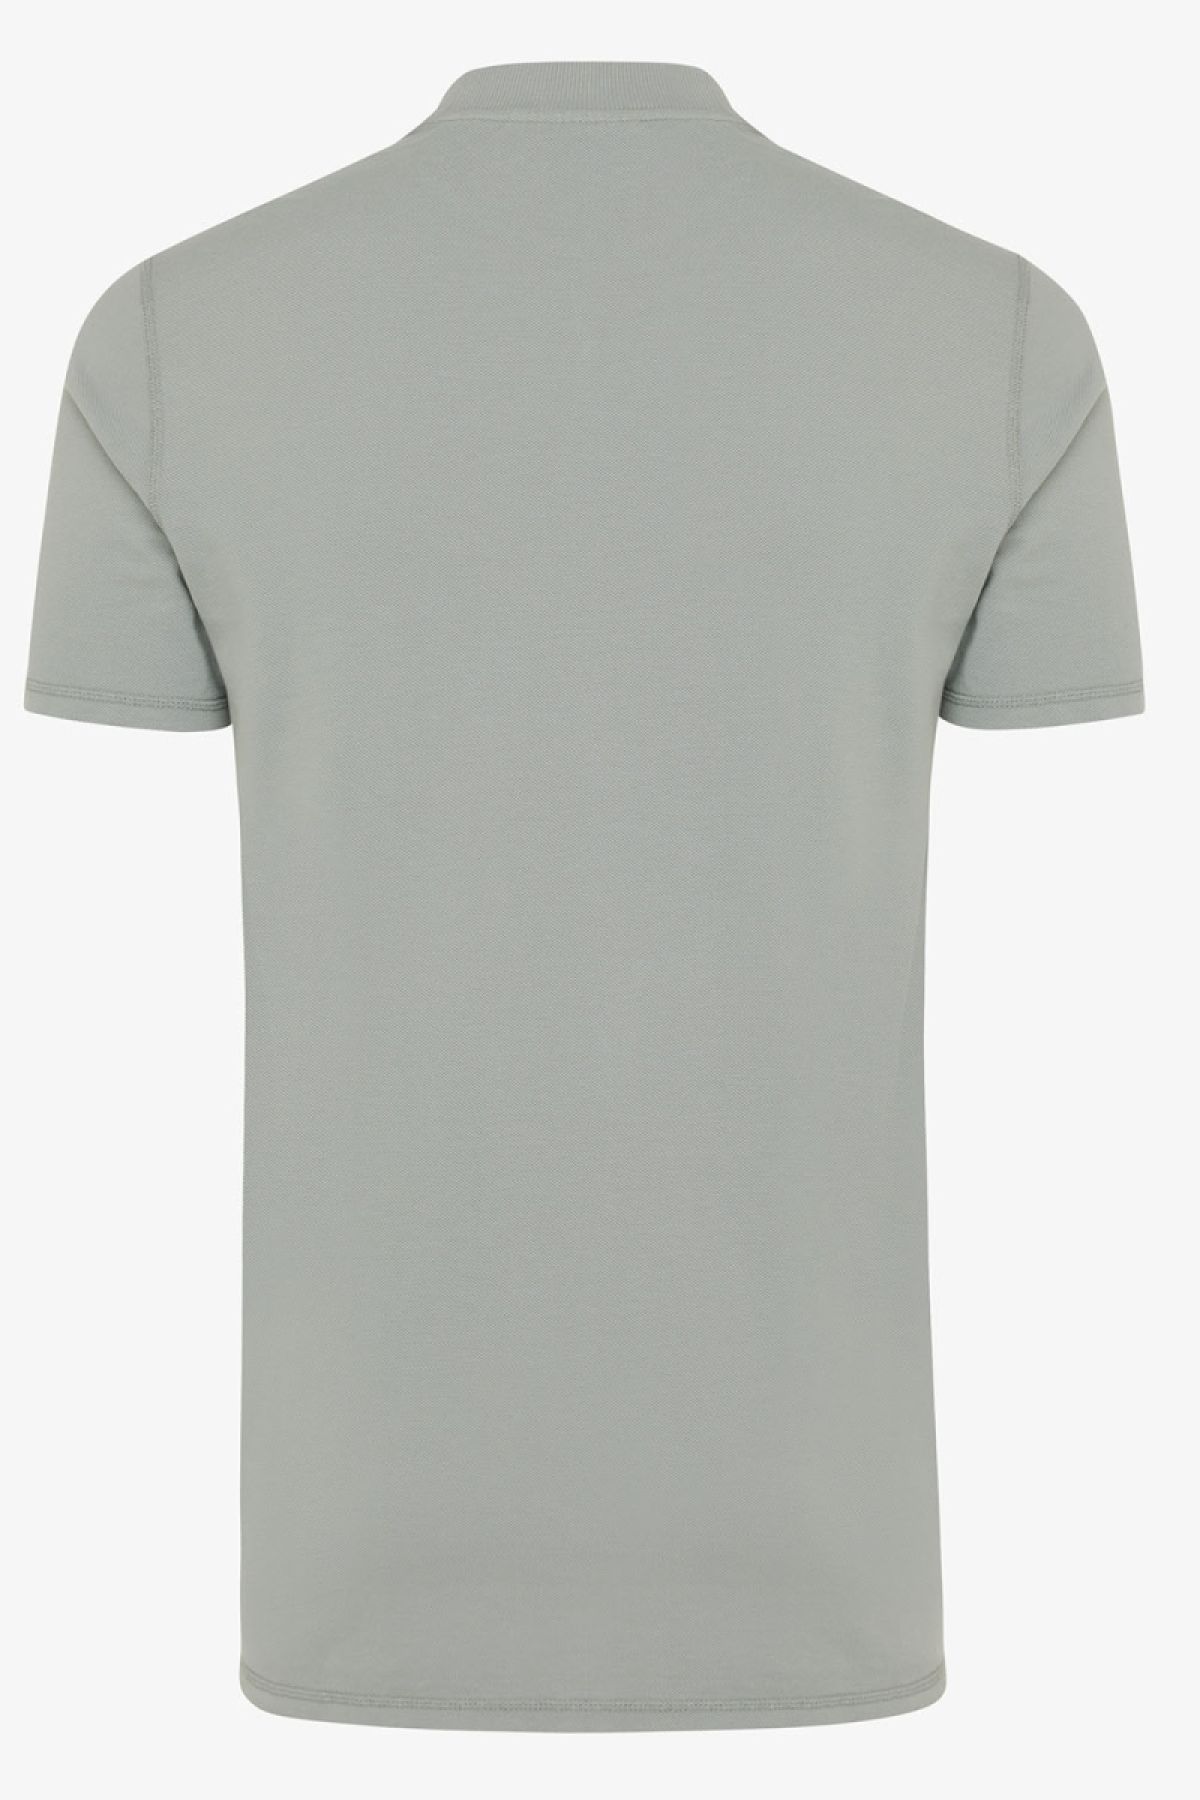 Pique T-shirt grijs